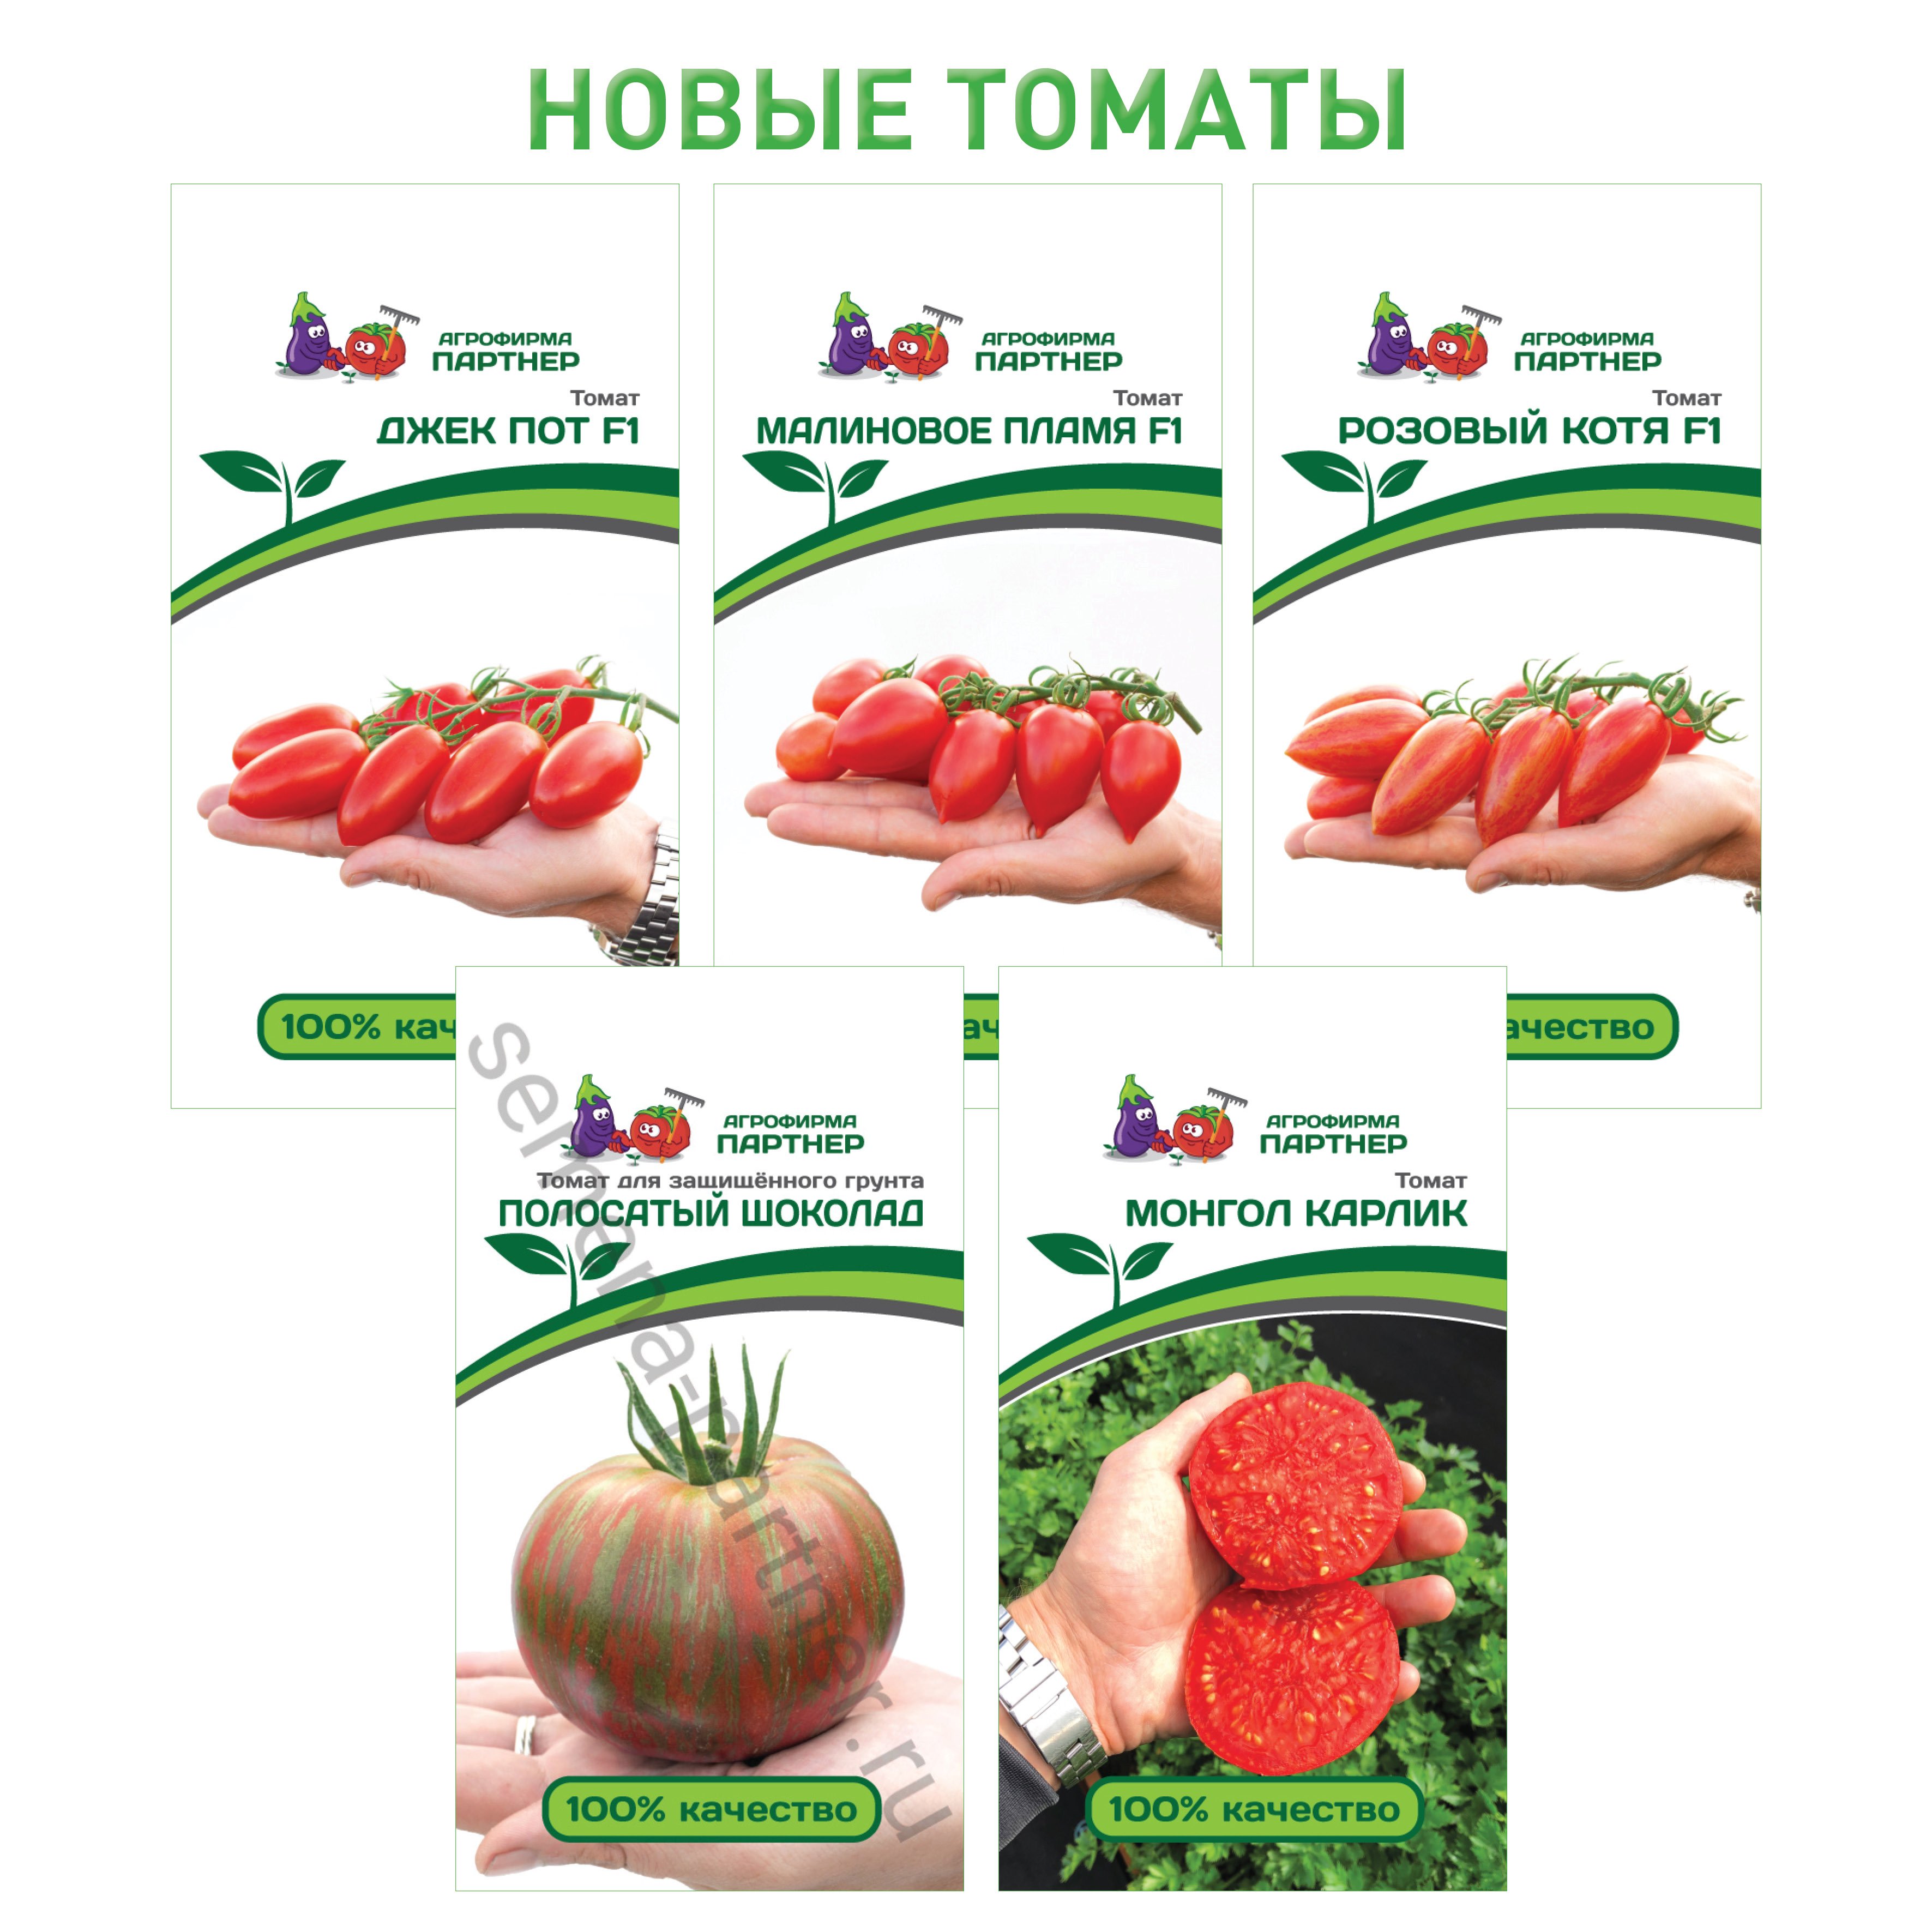 Купить томаты от производителя. Семена томатов Агрофирмы партнер. Агрофирма партнер Агрофирма партнер помидоры. Семена томатов от фирмы партнер 2023. Семена партнёр интернет магазин каталог на 2022.